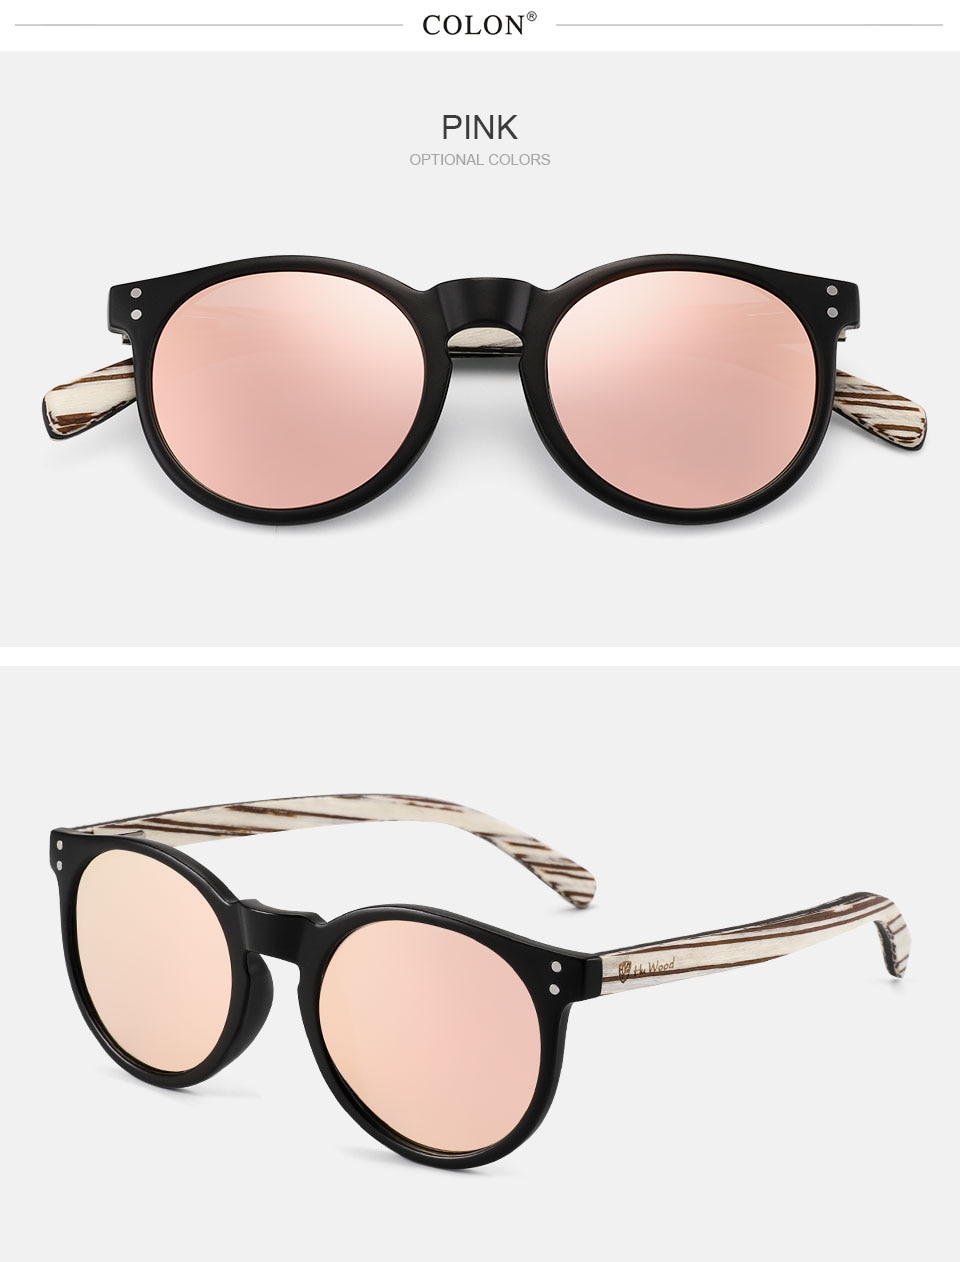 HU WOOD Round Sunglasses For Men Polarized Pink Uv400 Lens Sun Glasses Women Gafas de sol Wooden 2021 Nen Wooden Design